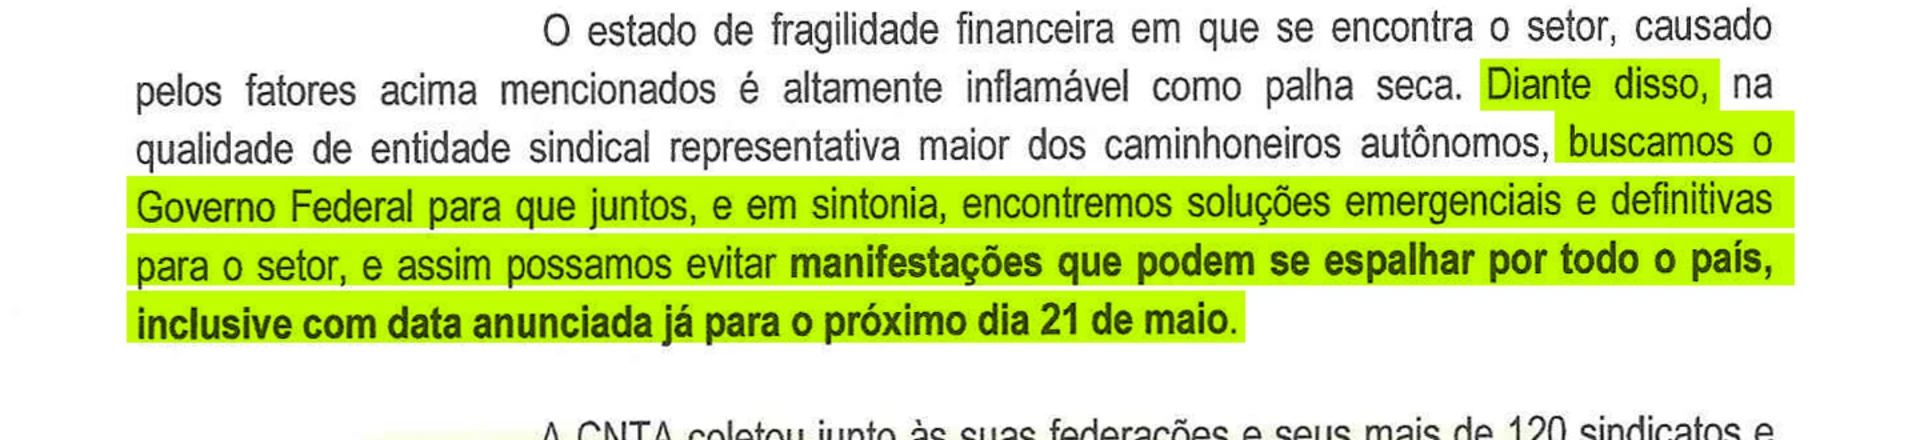 Documento da CNTA do dia 16 de maio antecipava greve ao governo.